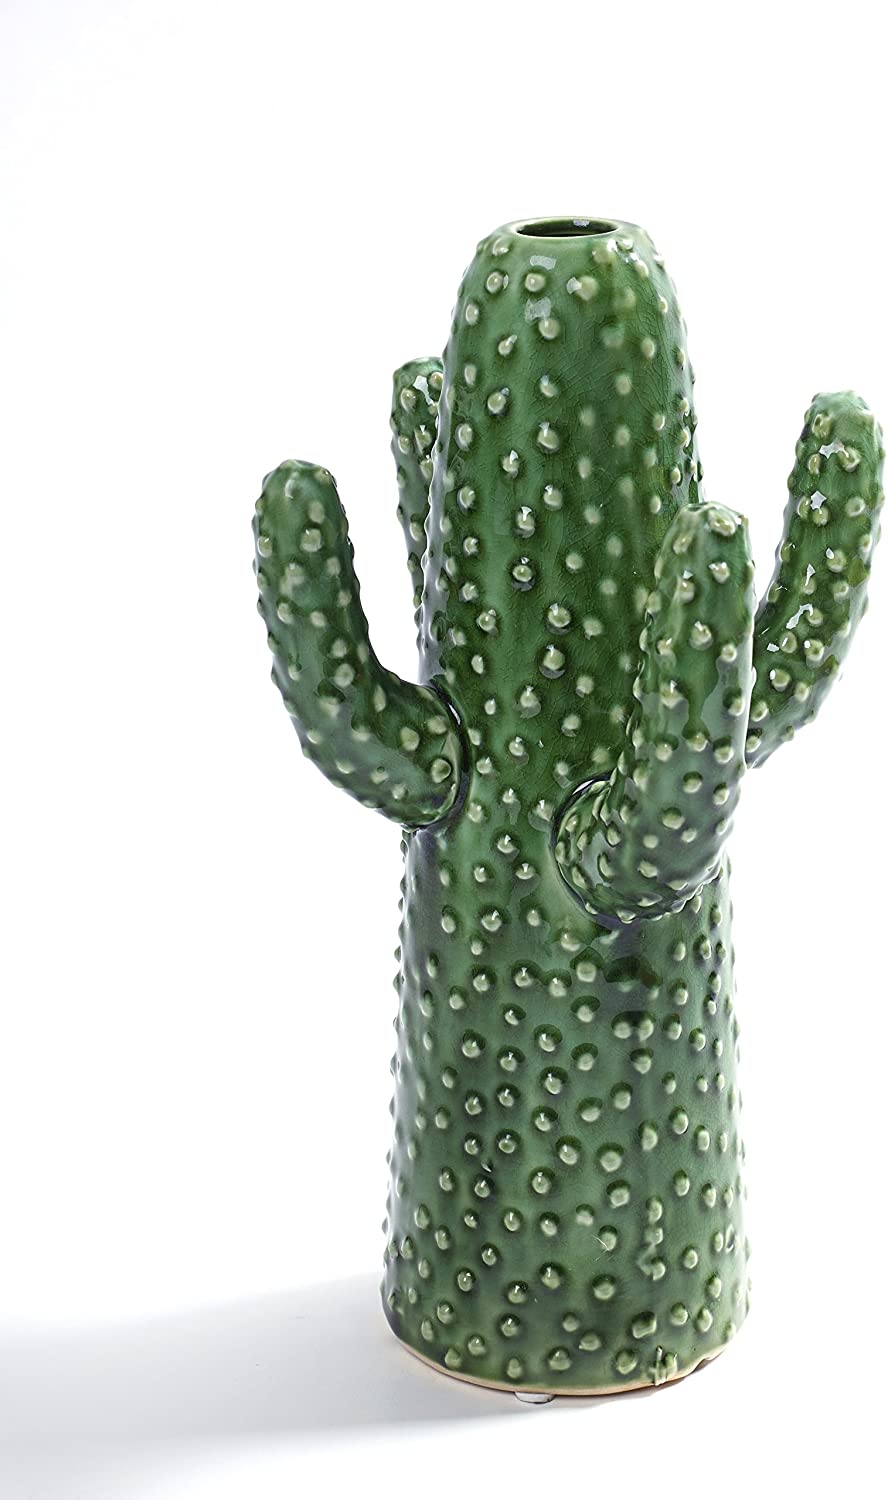 Serax – Cactus Decorative Vase, Vase, Decoration – Size: M/Height 29 cm – Ceramic